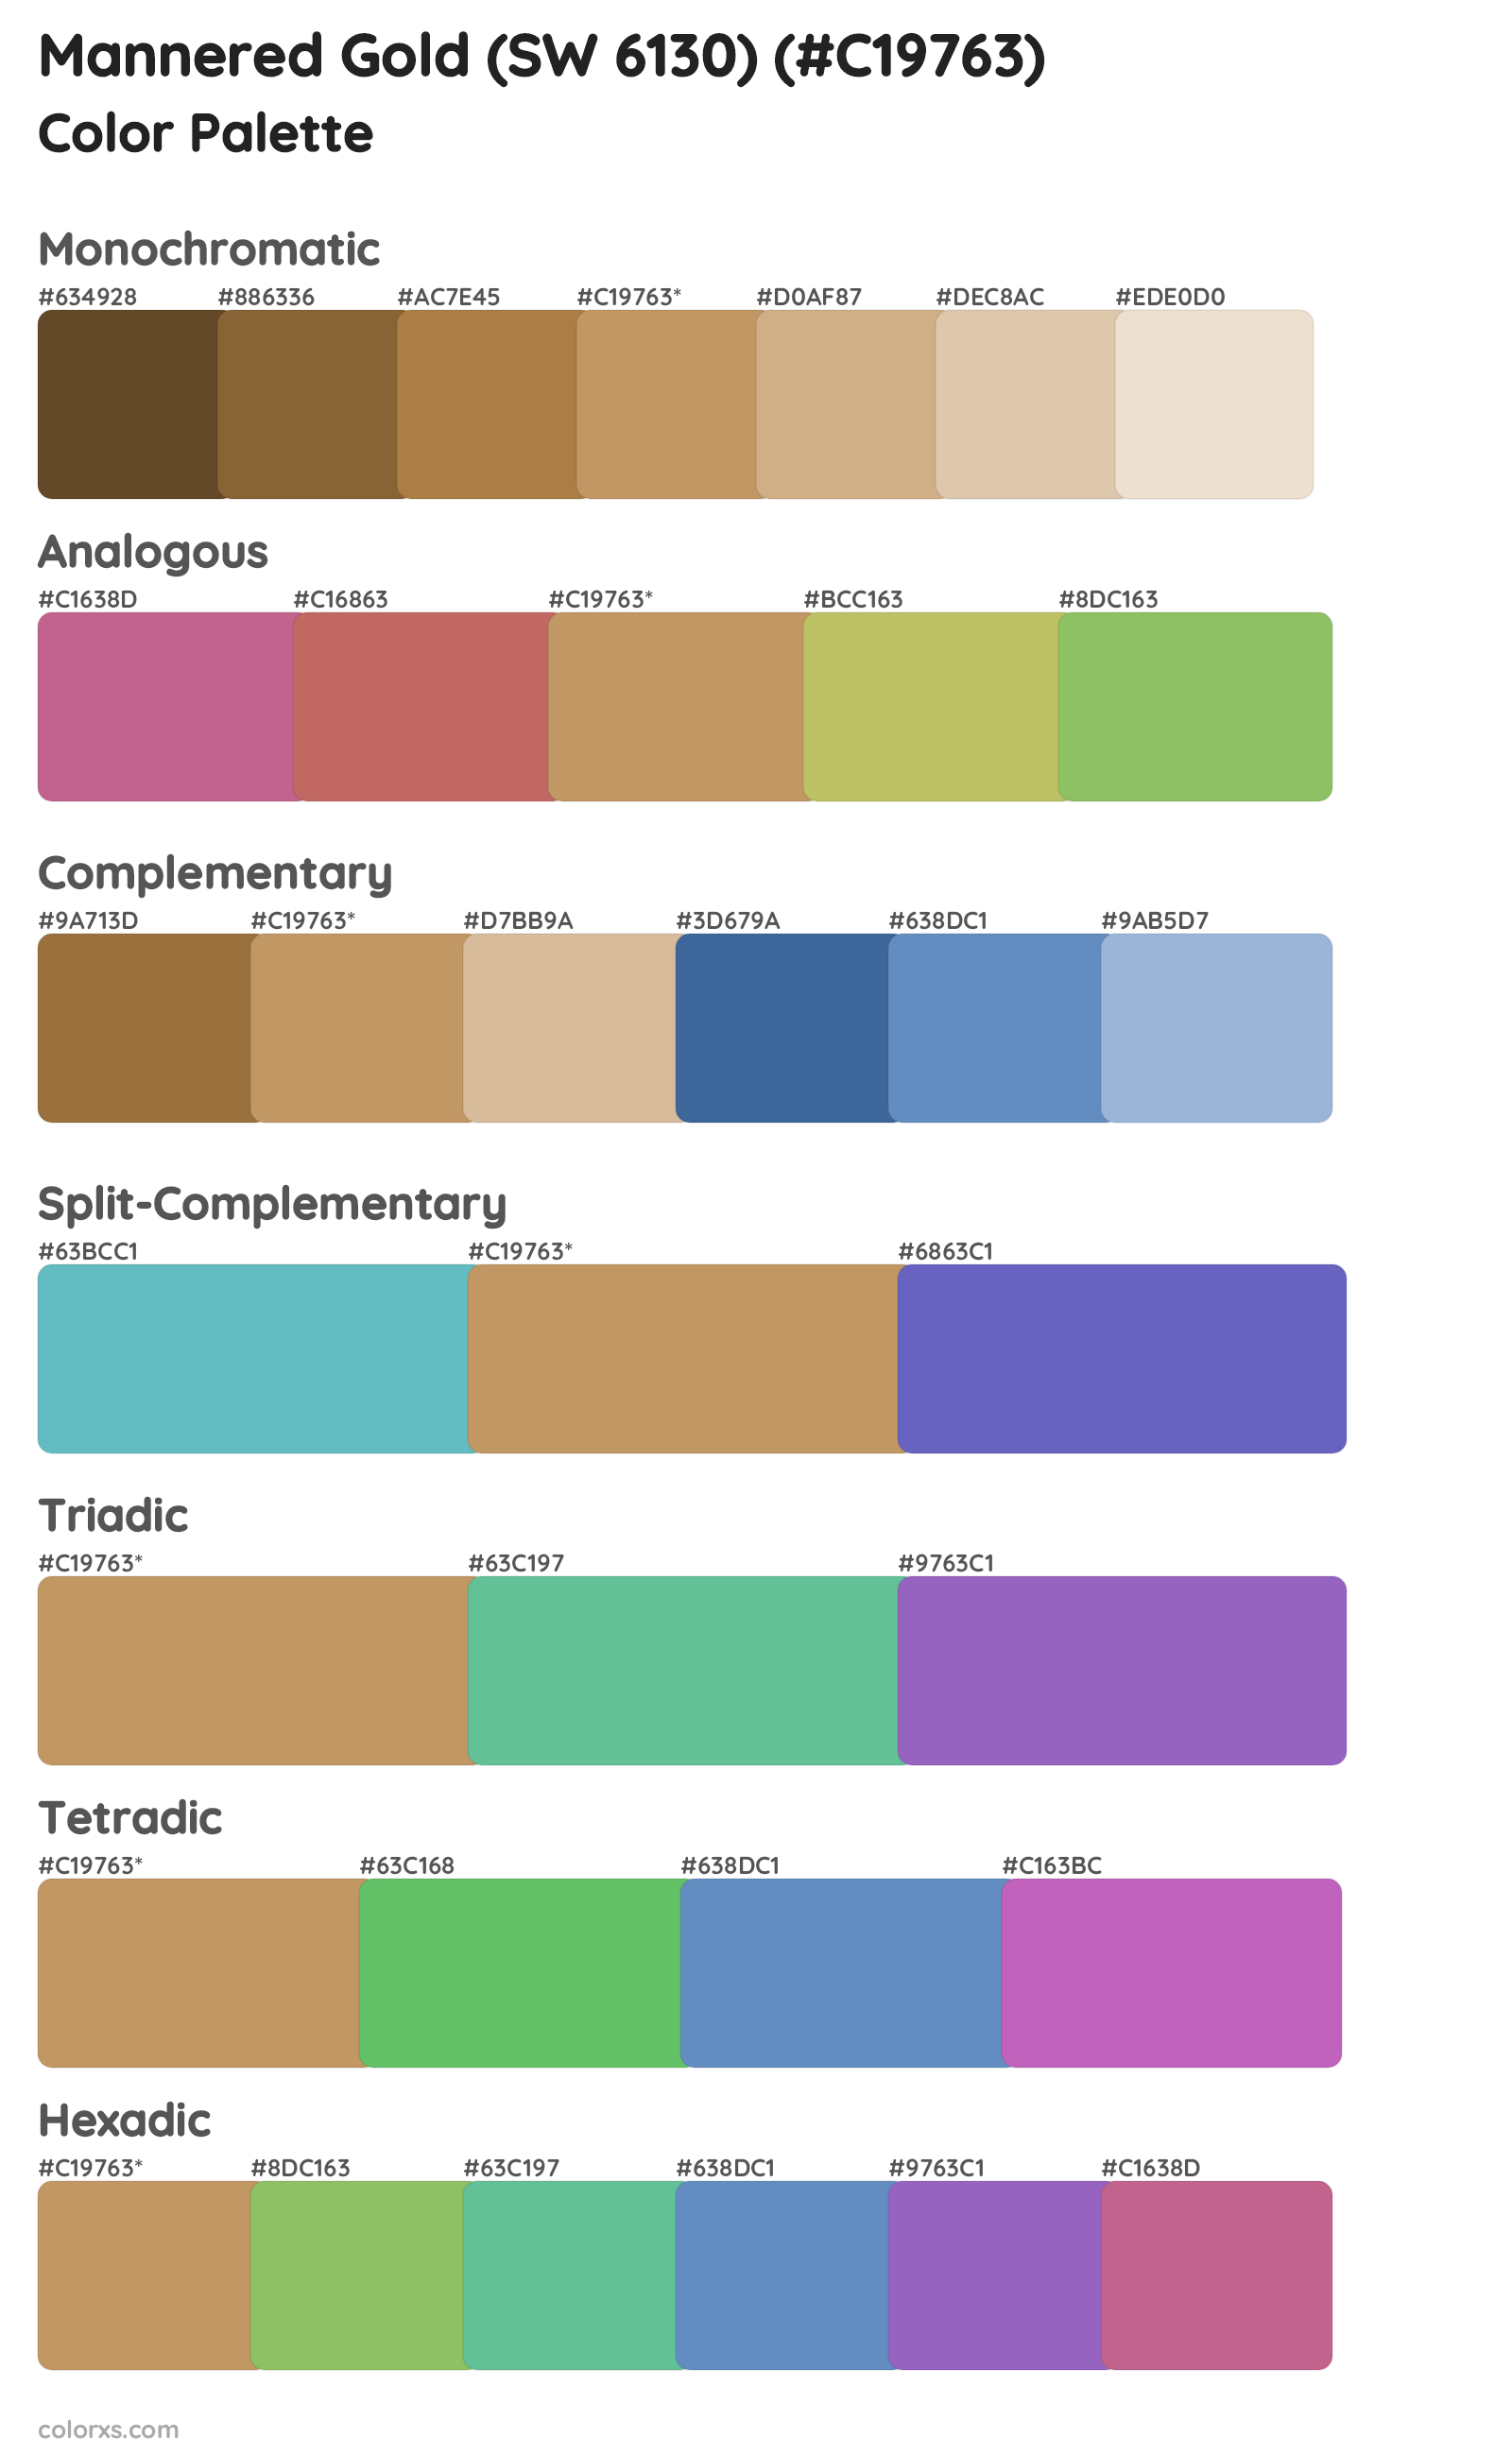 Mannered Gold (SW 6130) Color Scheme Palettes